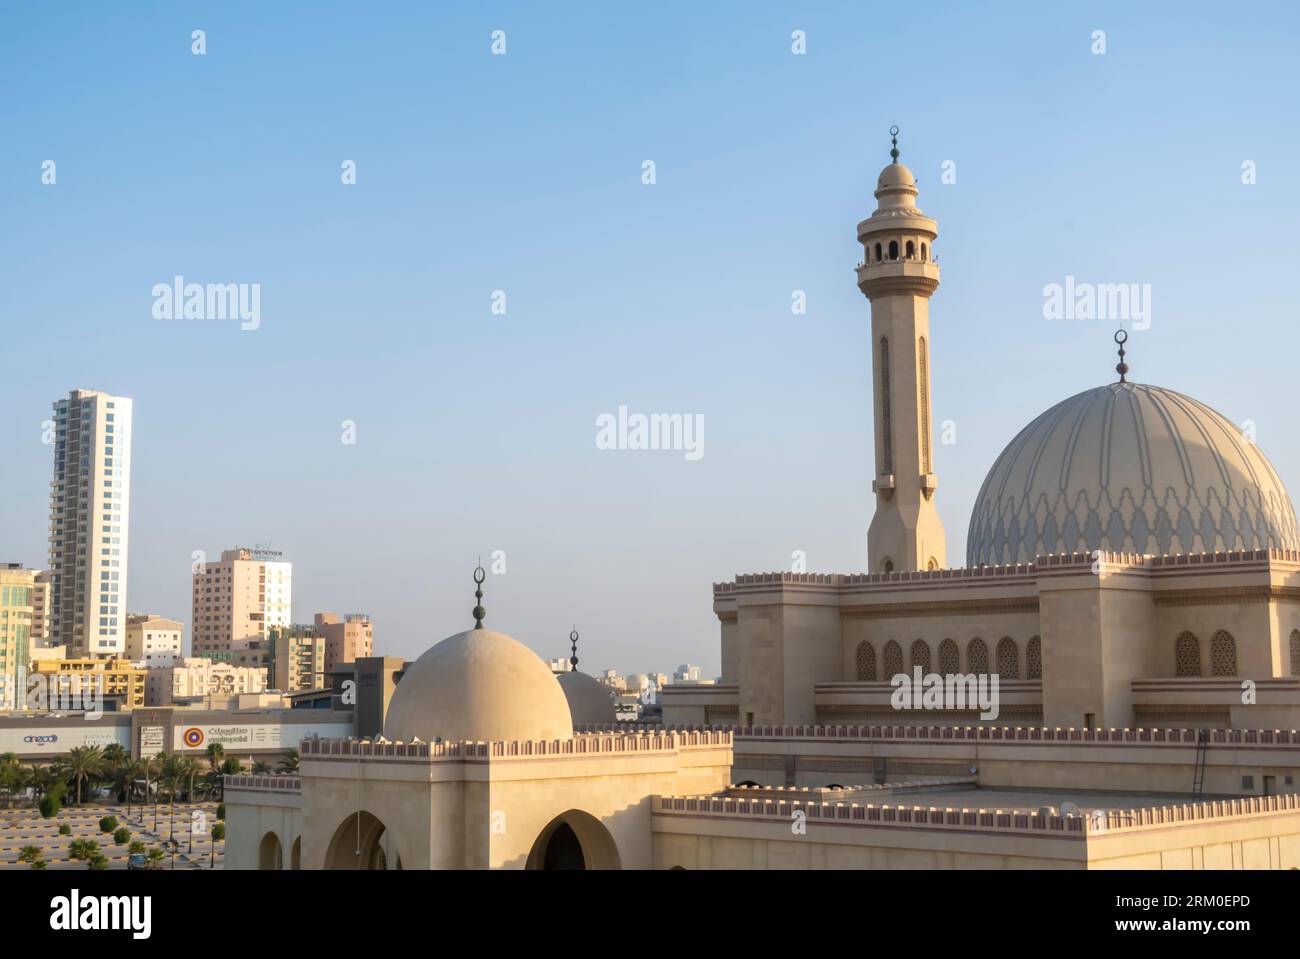 Mosquée Al-Fateh Bahreïn - l'une des plus grandes mosquées du monde Banque D'Images